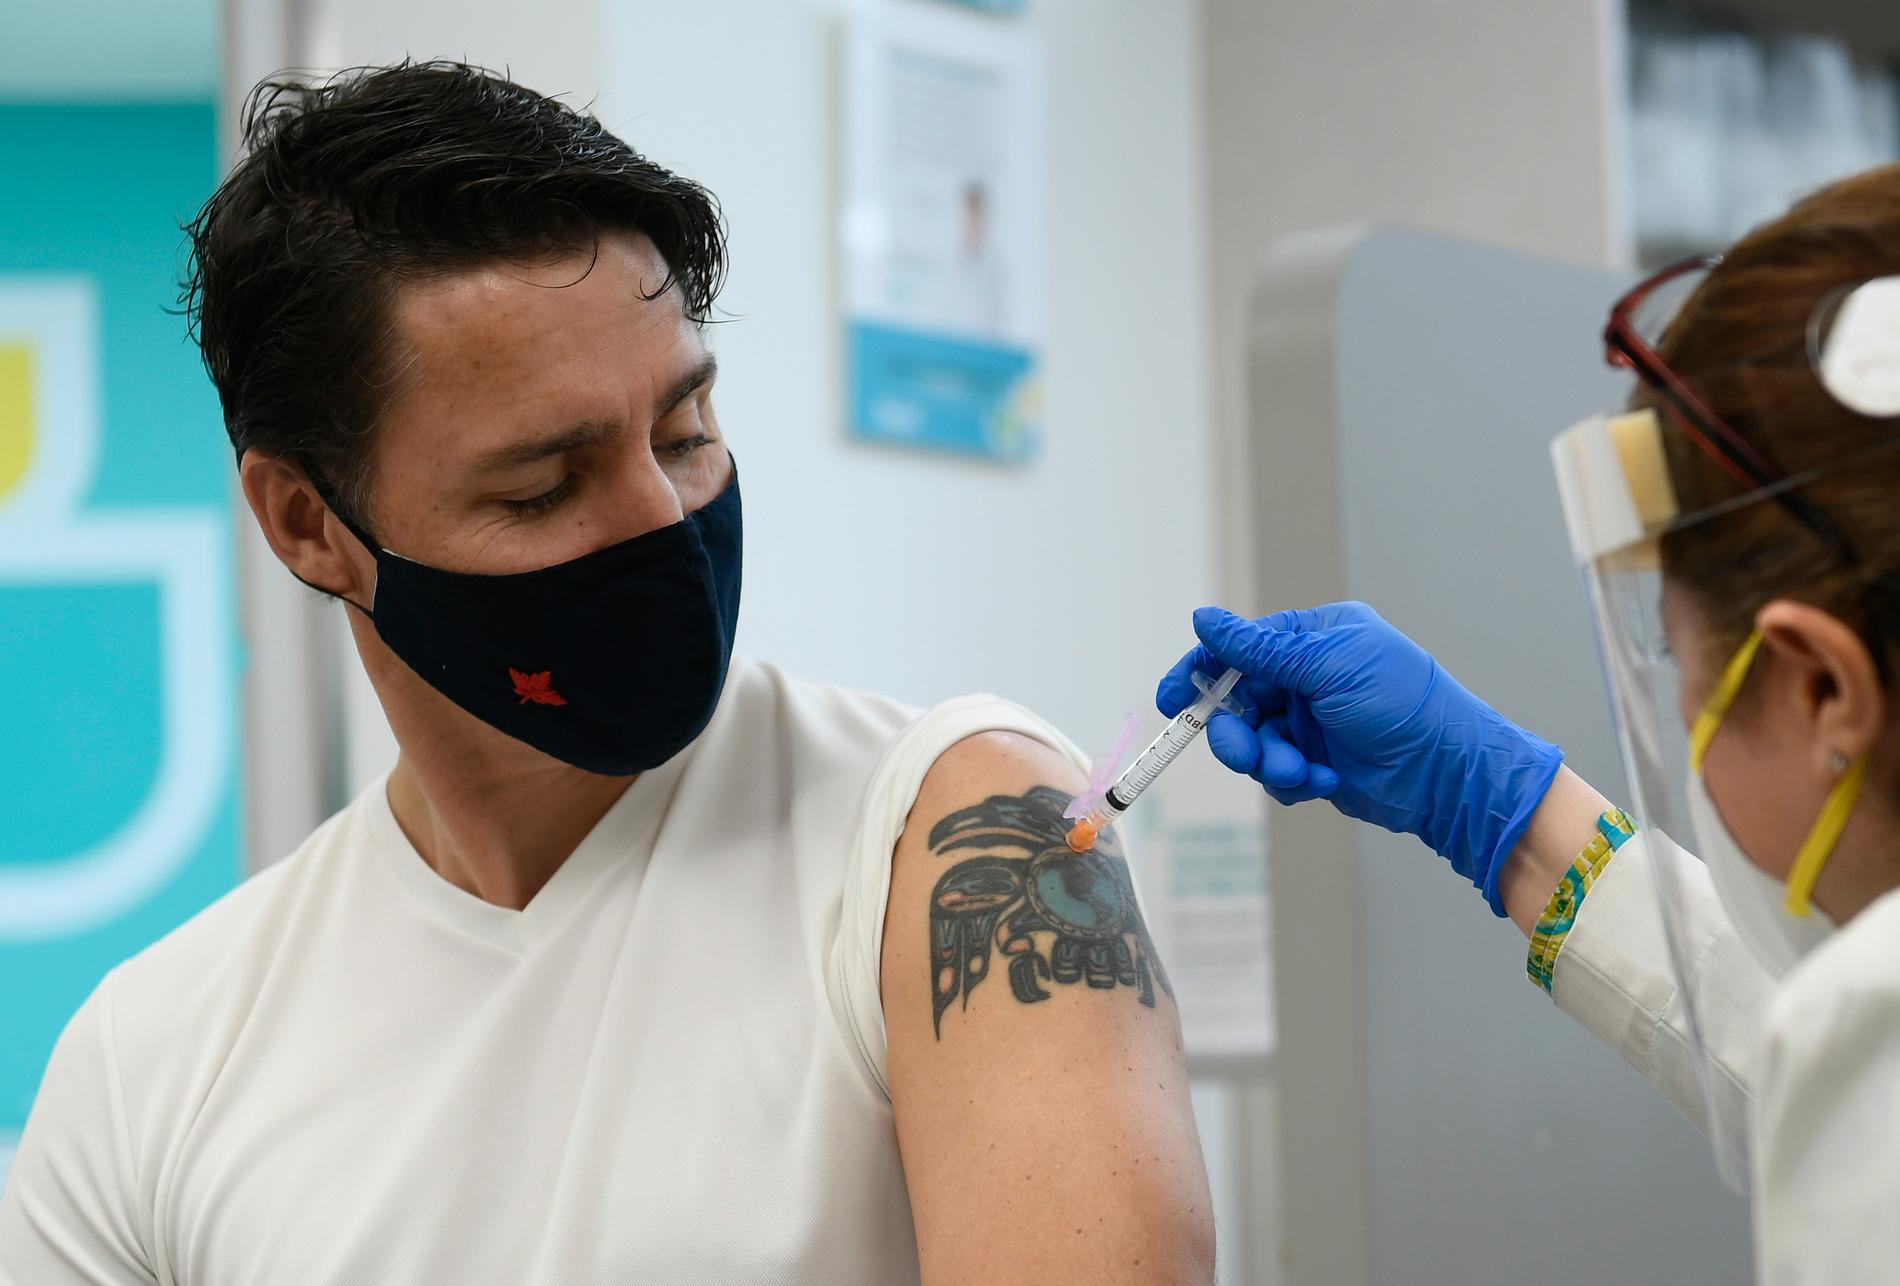 Kanadas premiärminister Justin Trudeau fick sin andra vaccindos i början av juli.